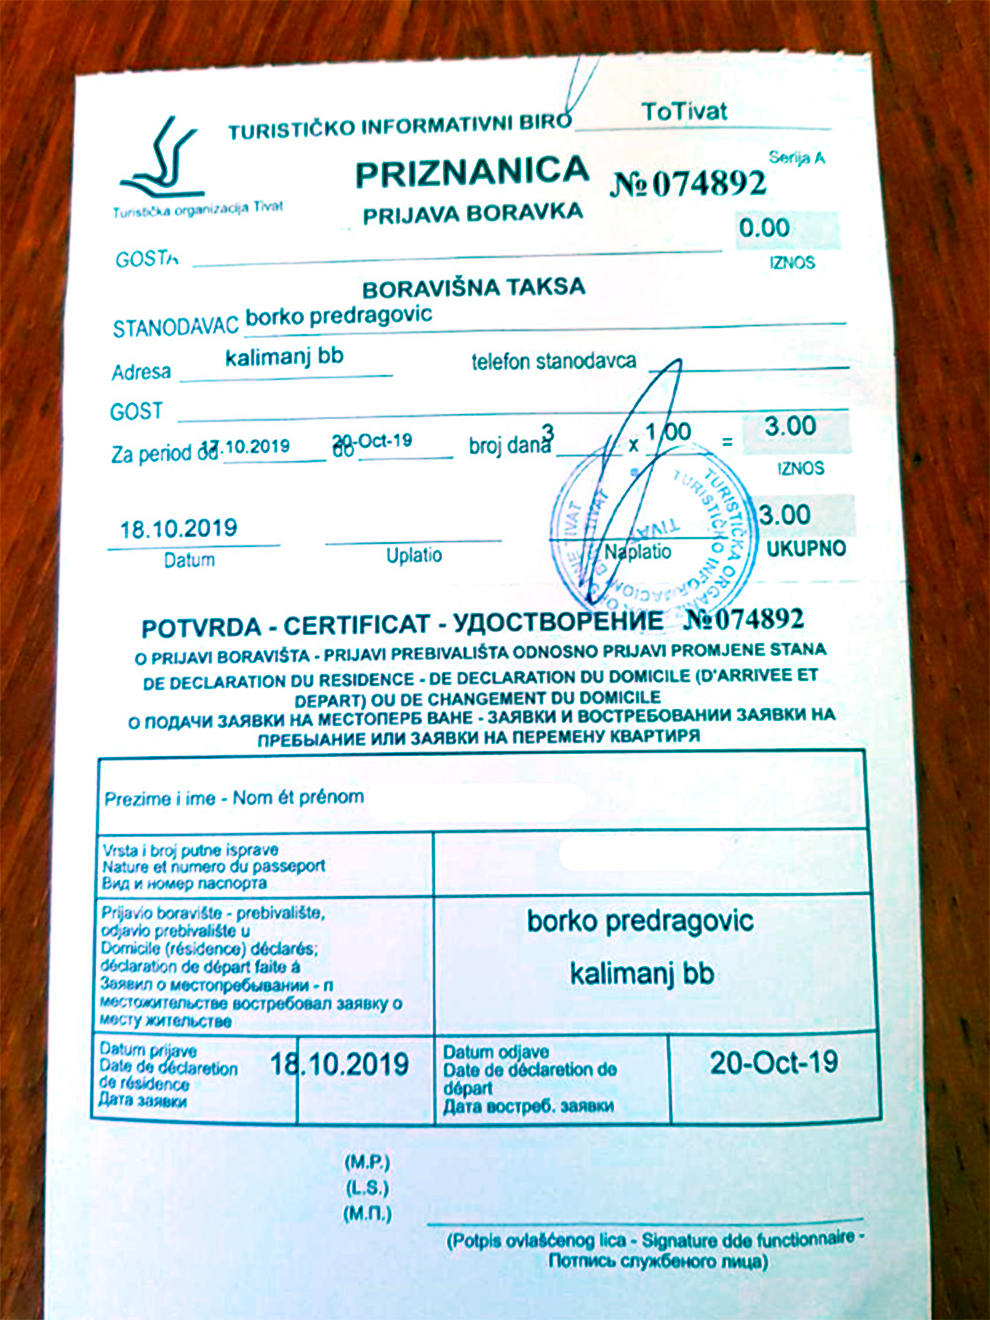 В Тивате выдают такие удостоверения туриста — с паспортными данными. В других городах могут дать обычный кассовый чек